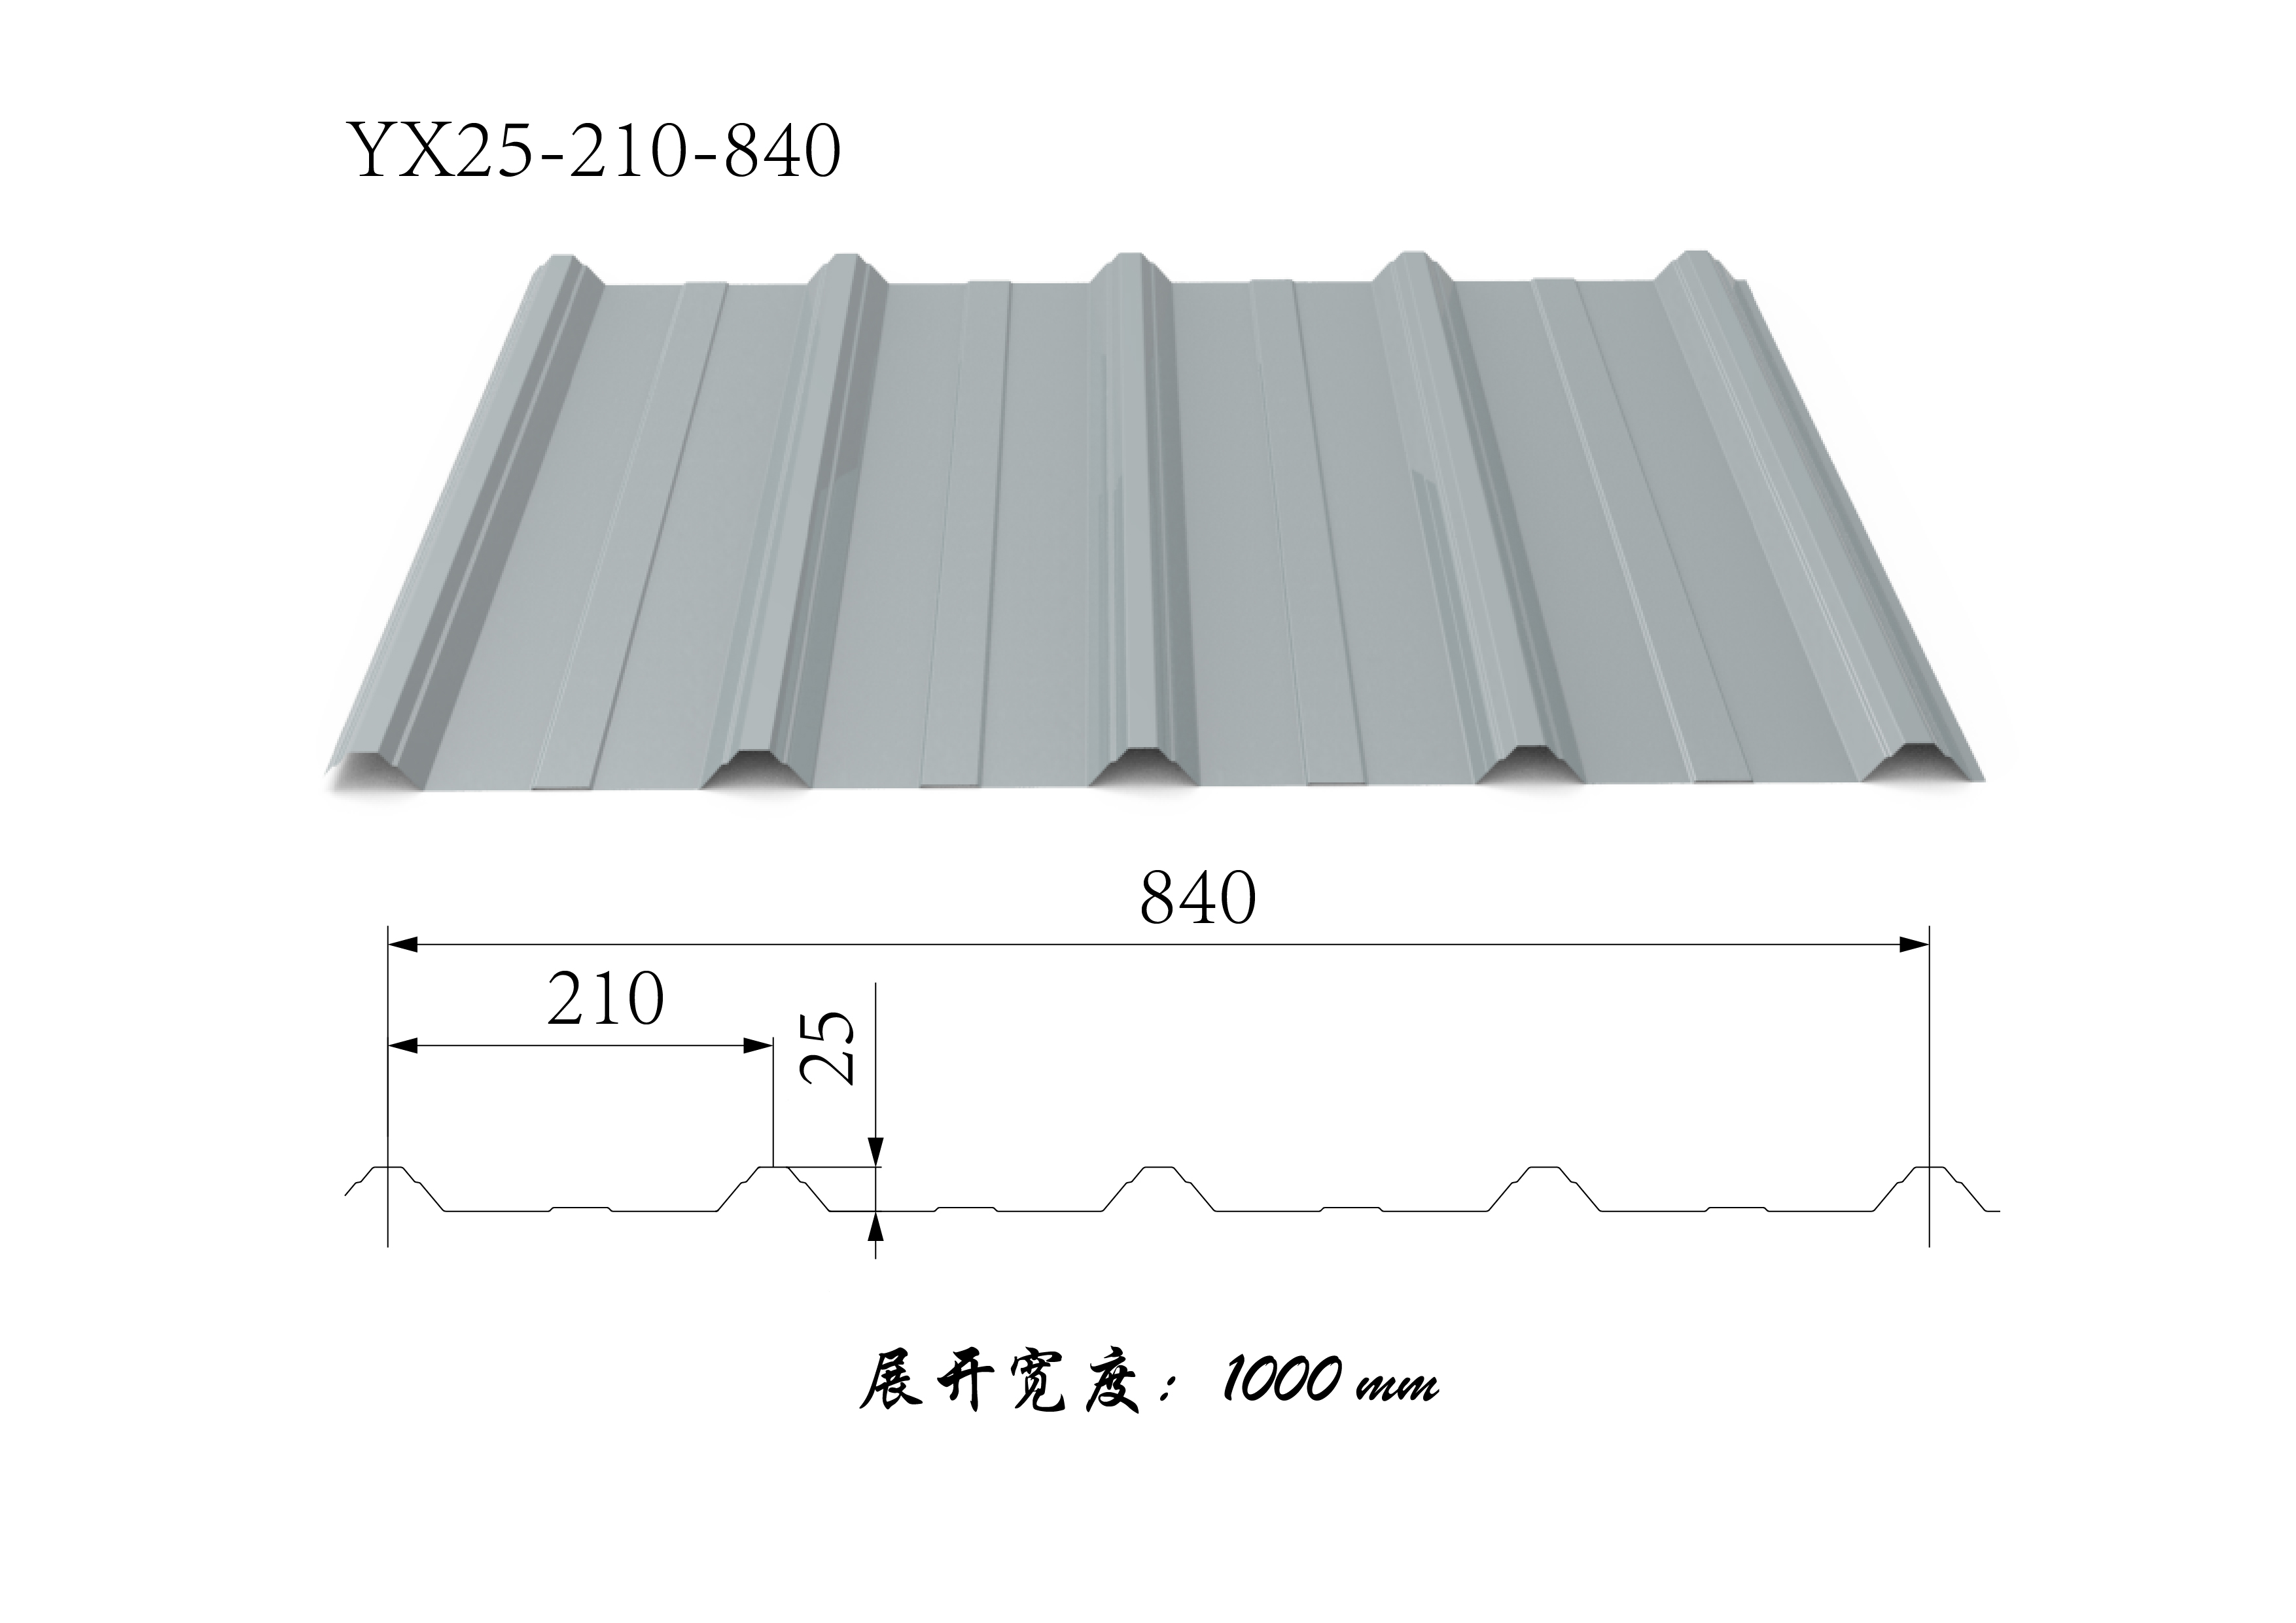 YX25-210-840